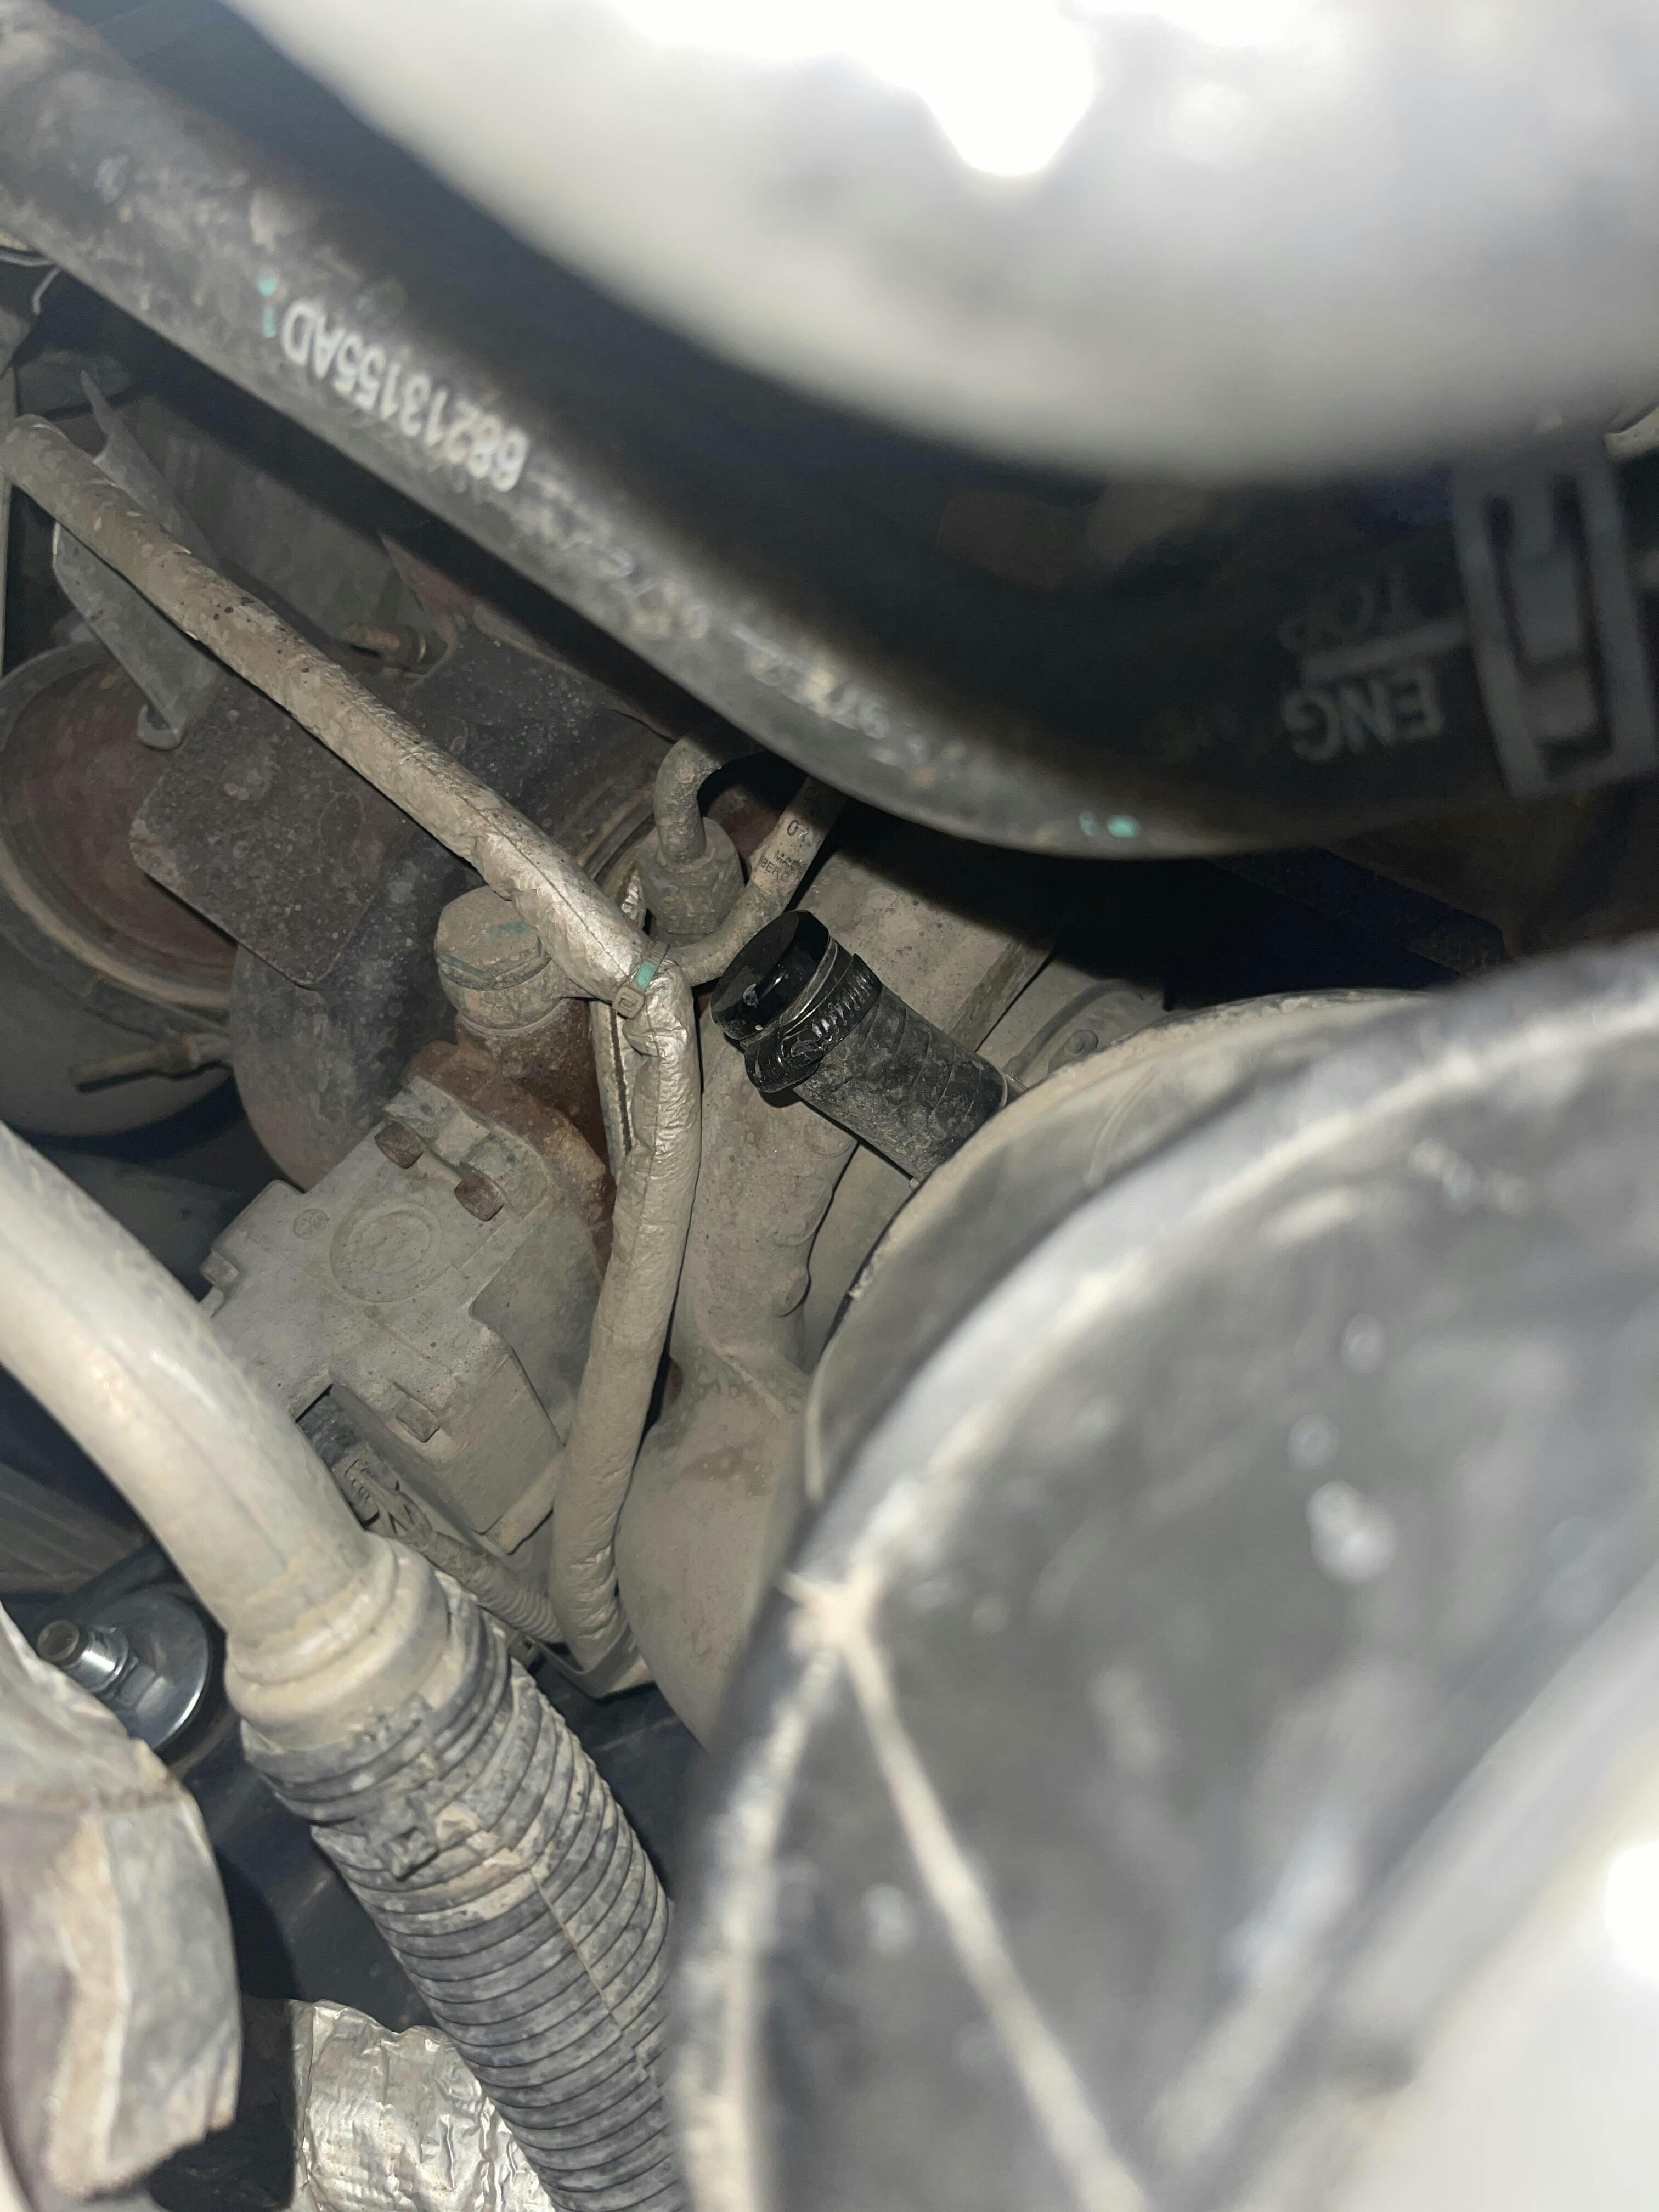 jeep 2.8 crd egr coolant leak fix